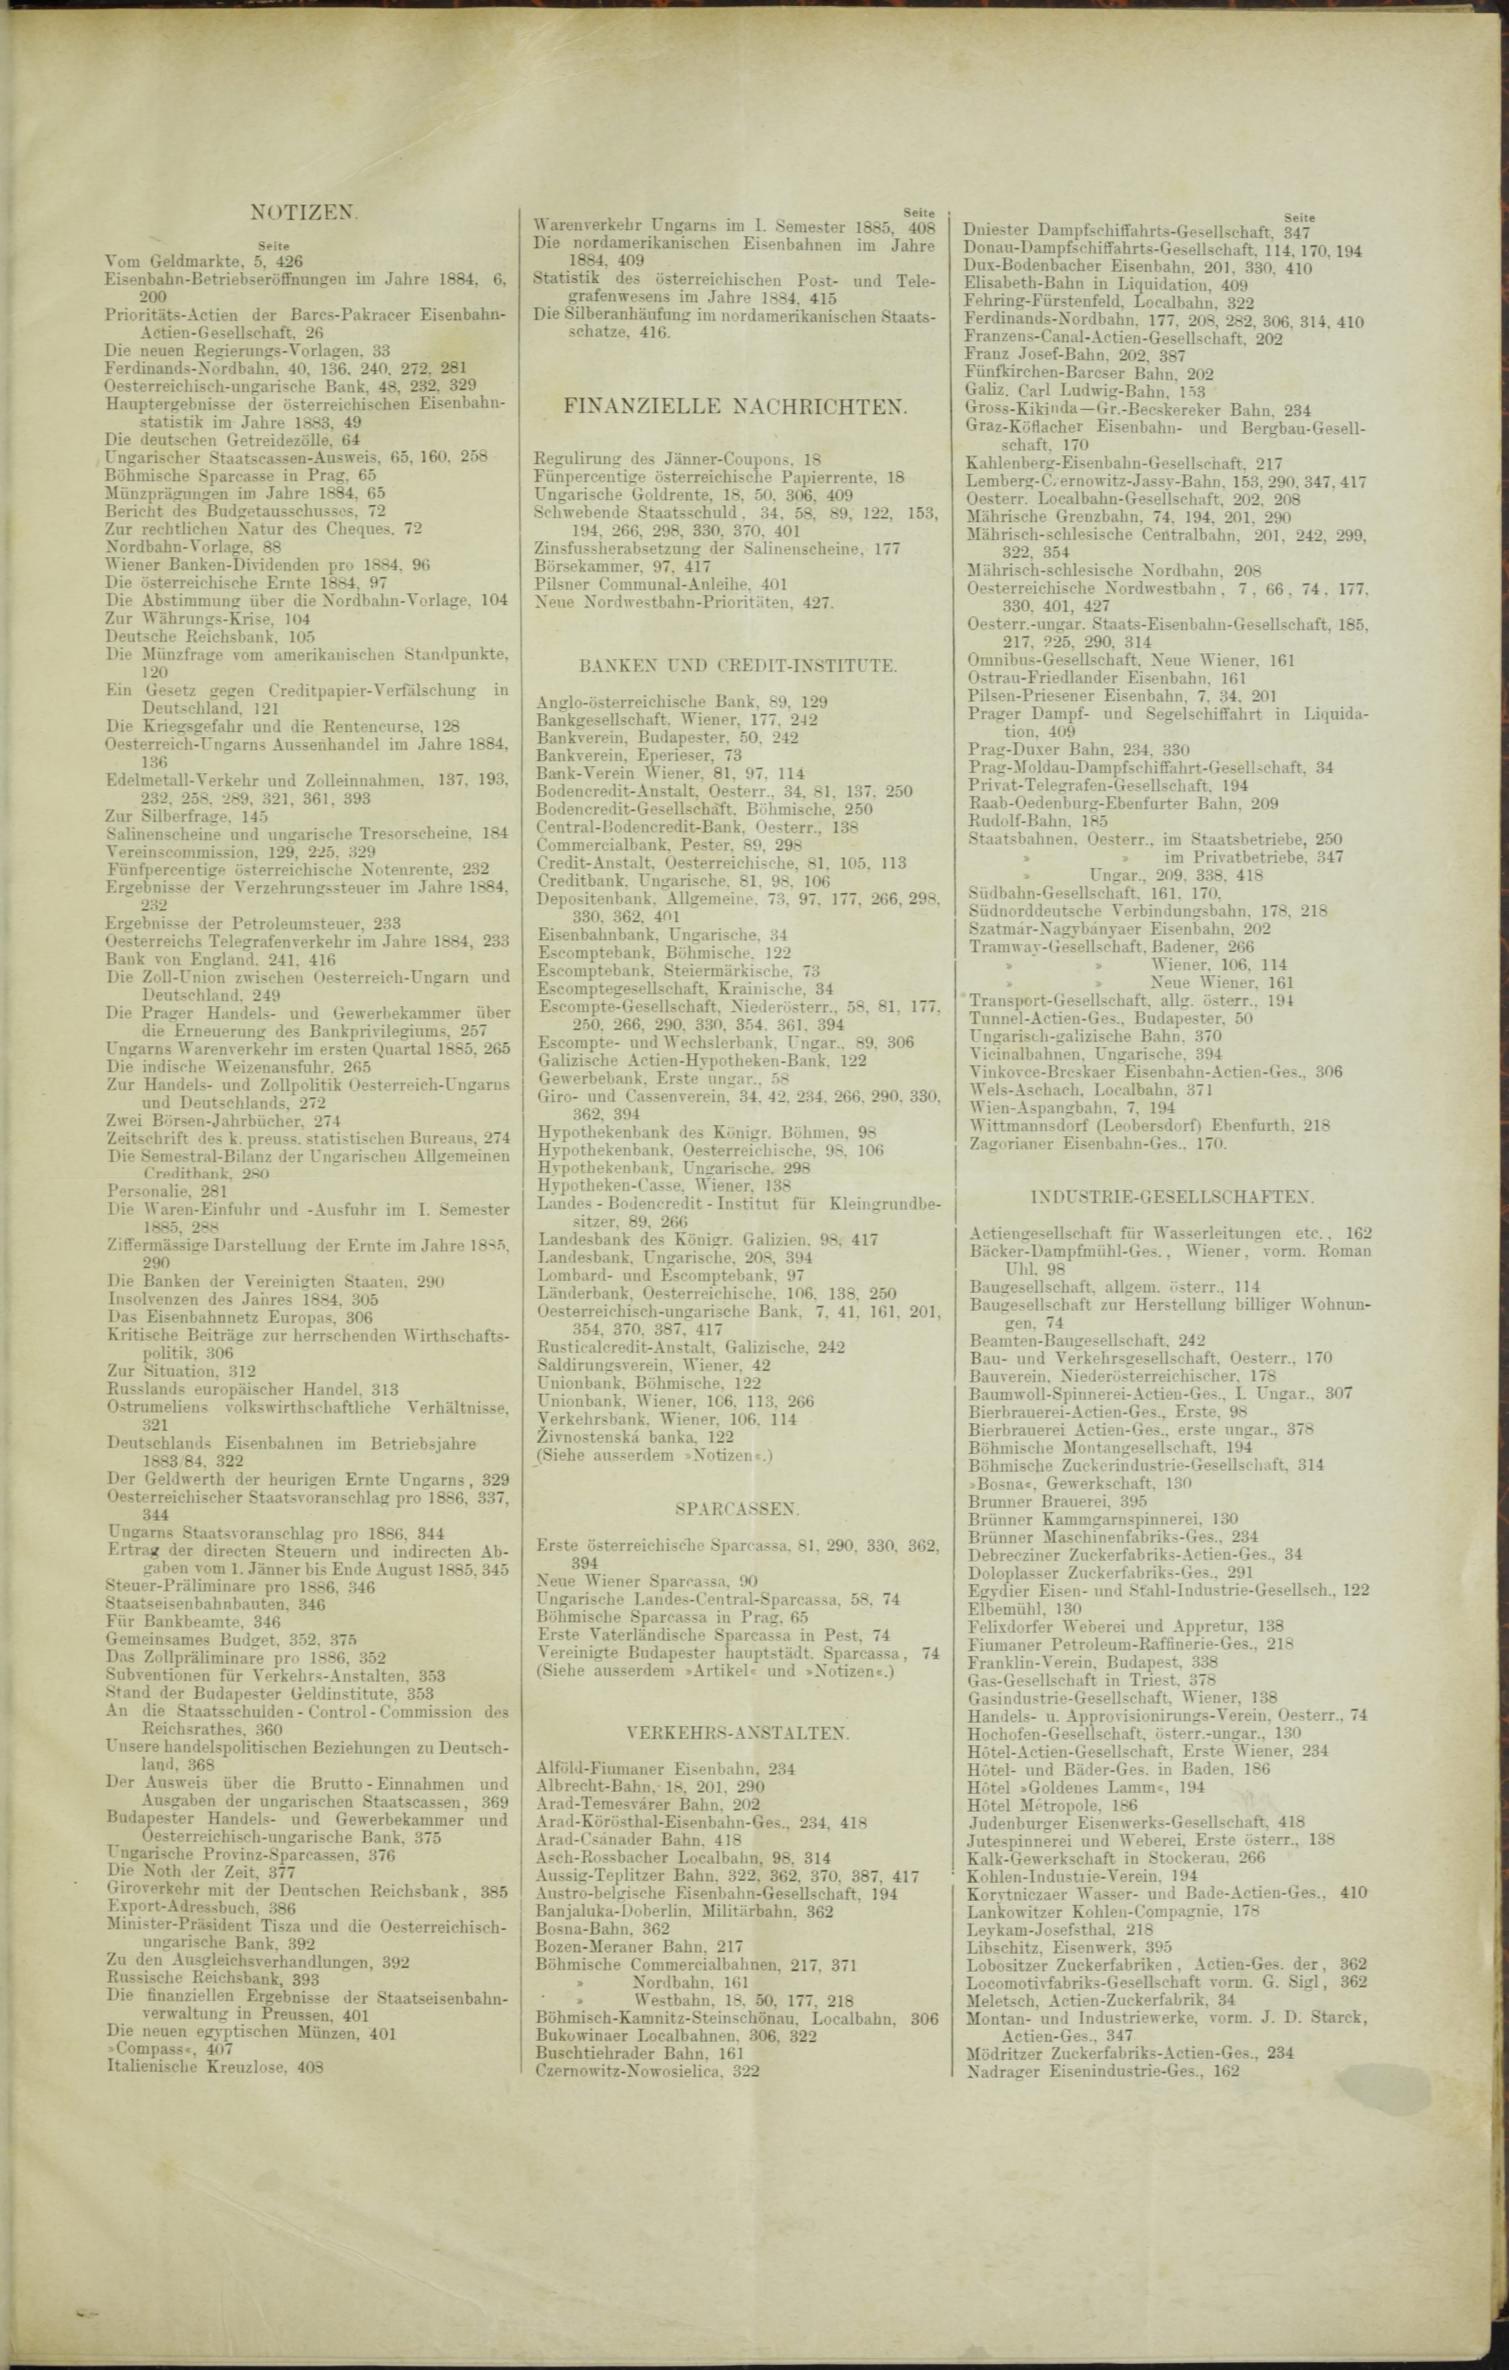 Der Tresor 11.06.1885 - Seite 11